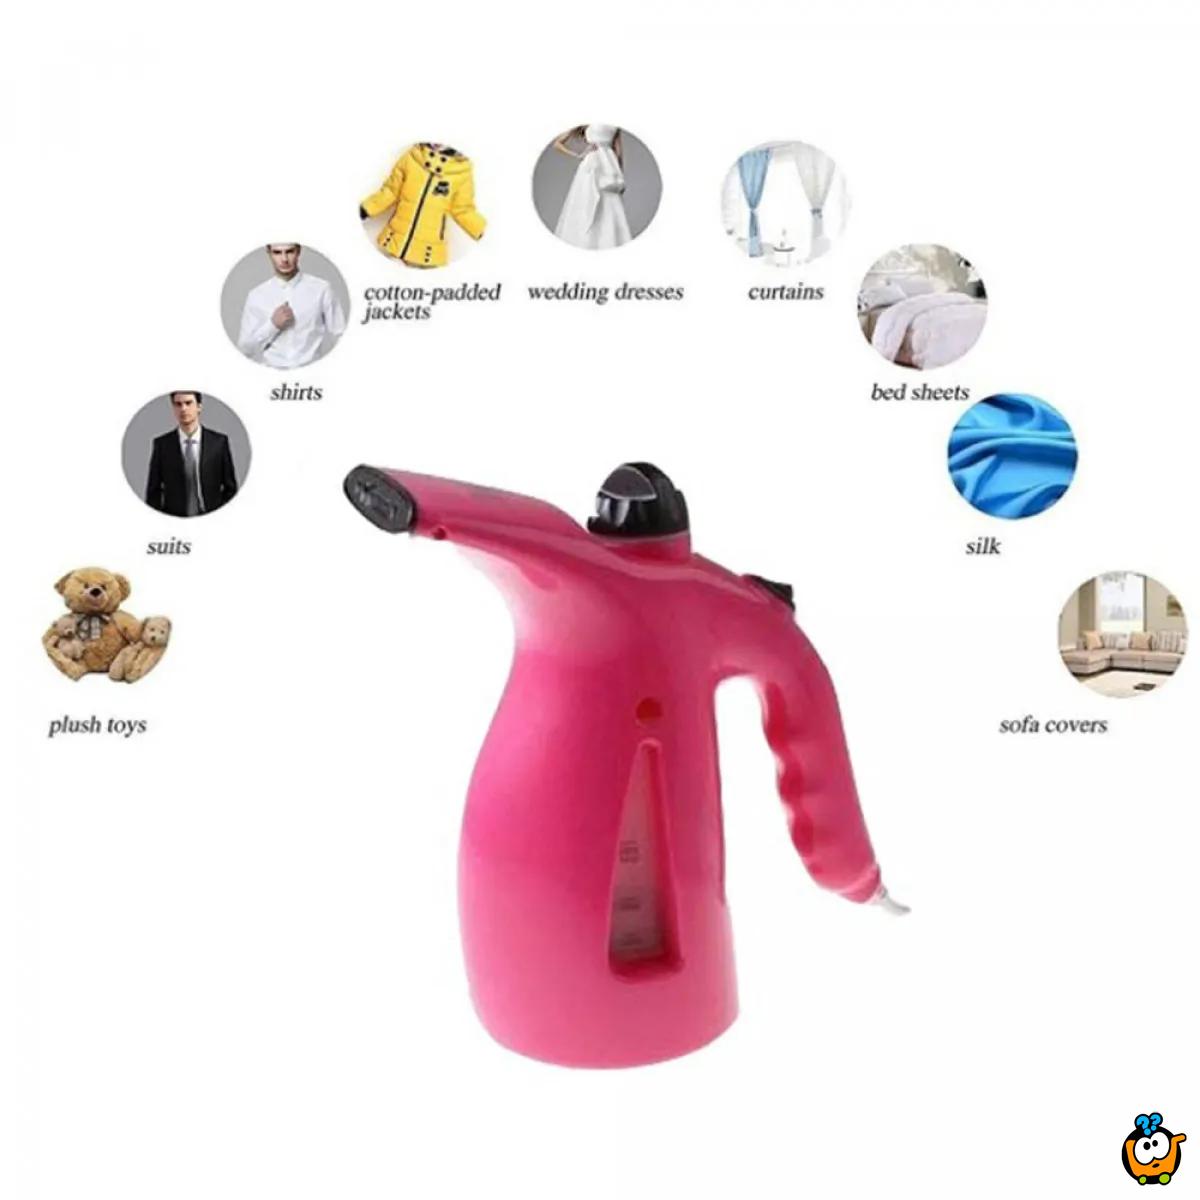 Mini Steam - Ručni paročistač za odeću, nameštaj i zavese